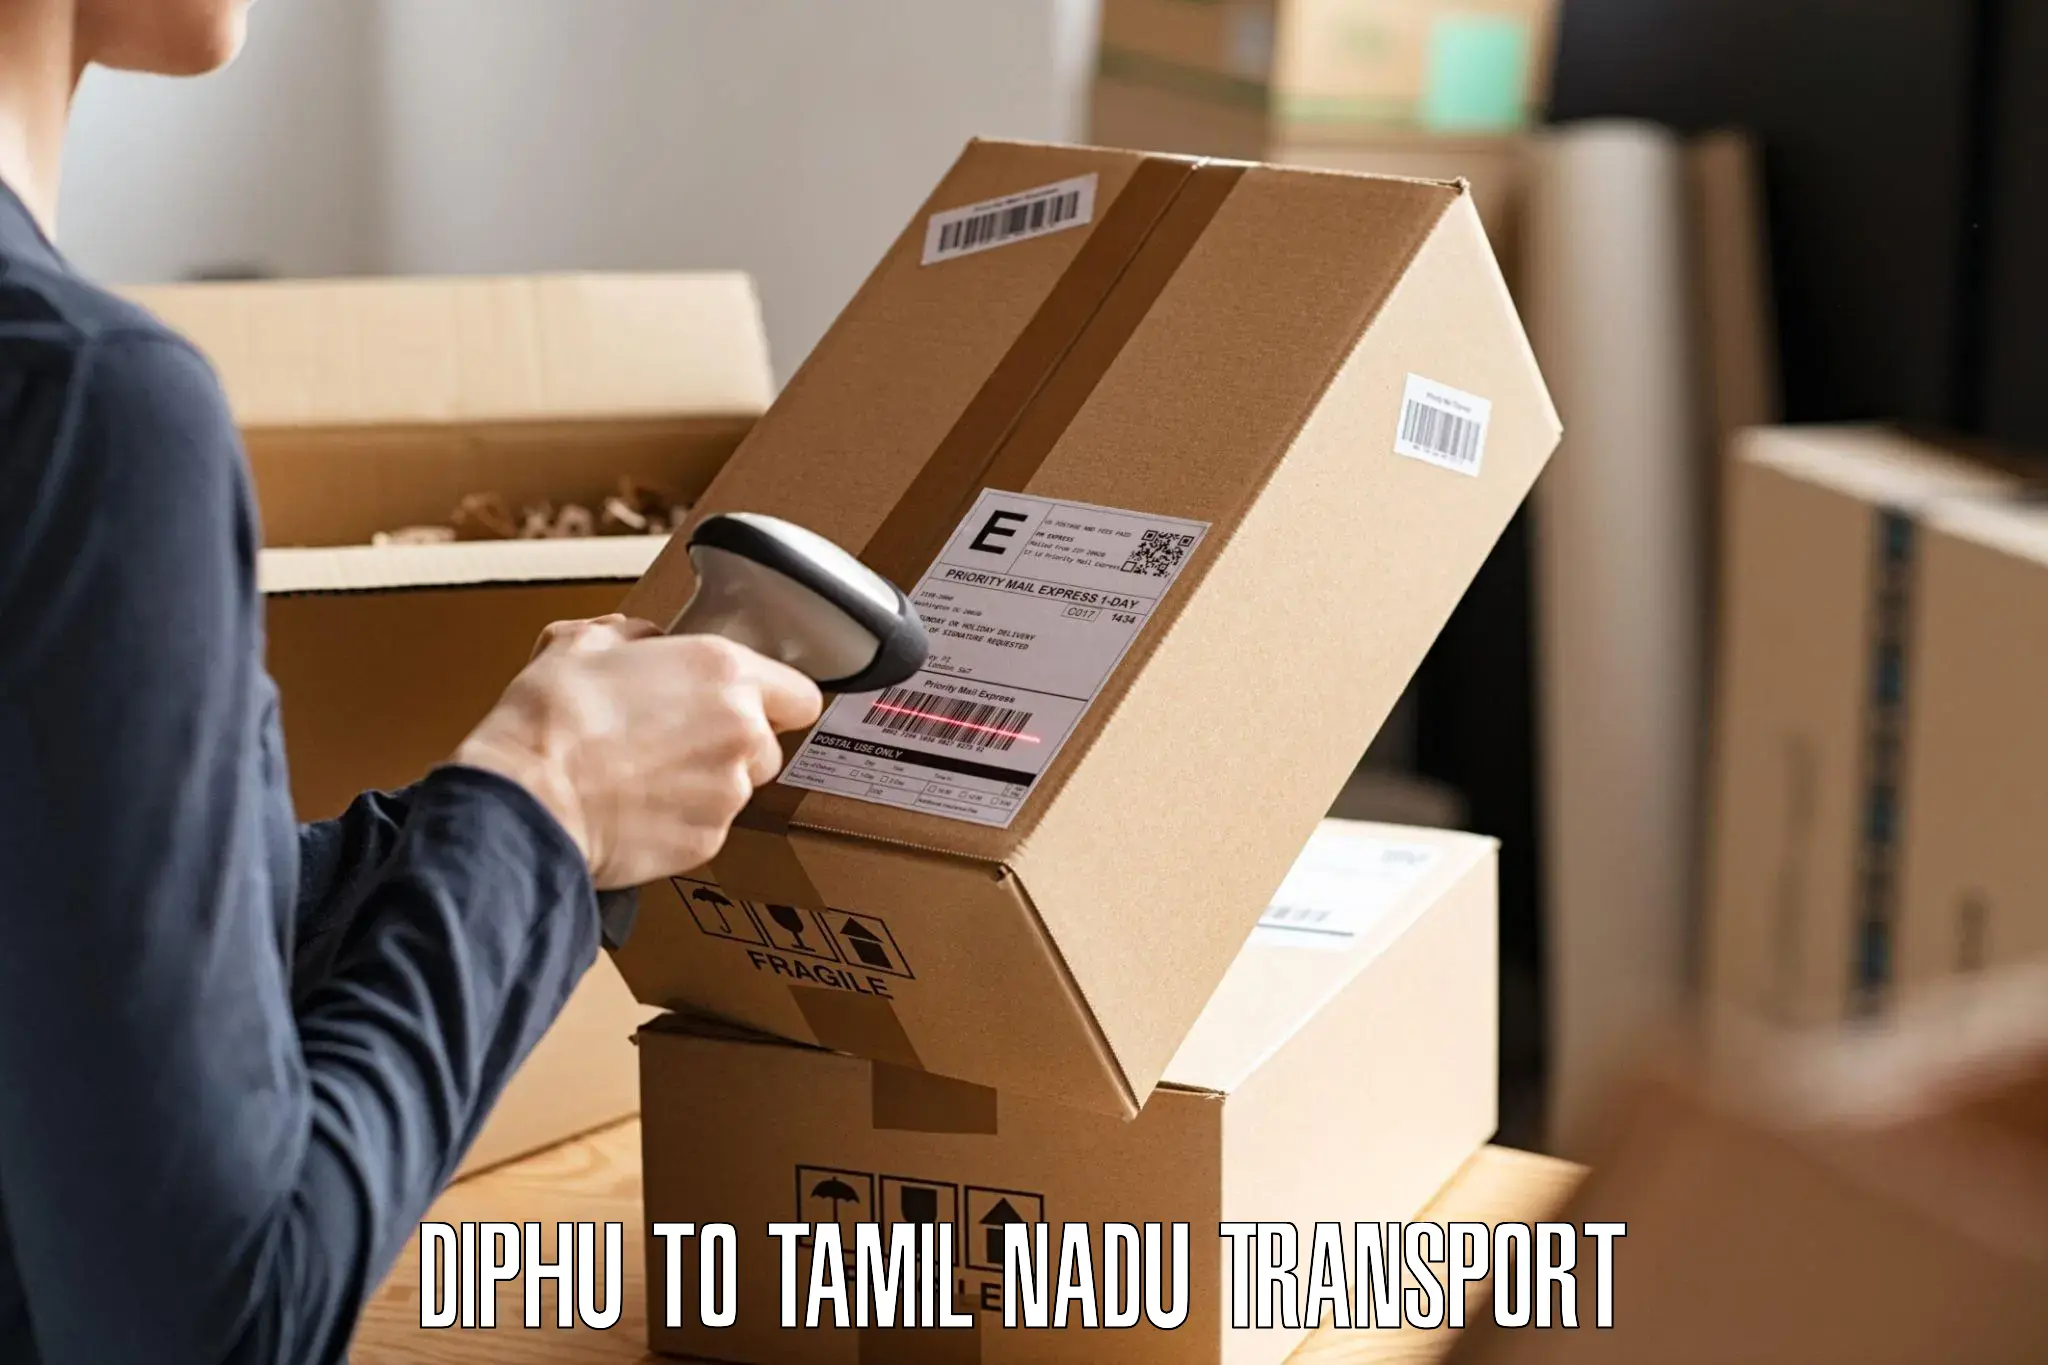 Online transport service Diphu to Perundurai